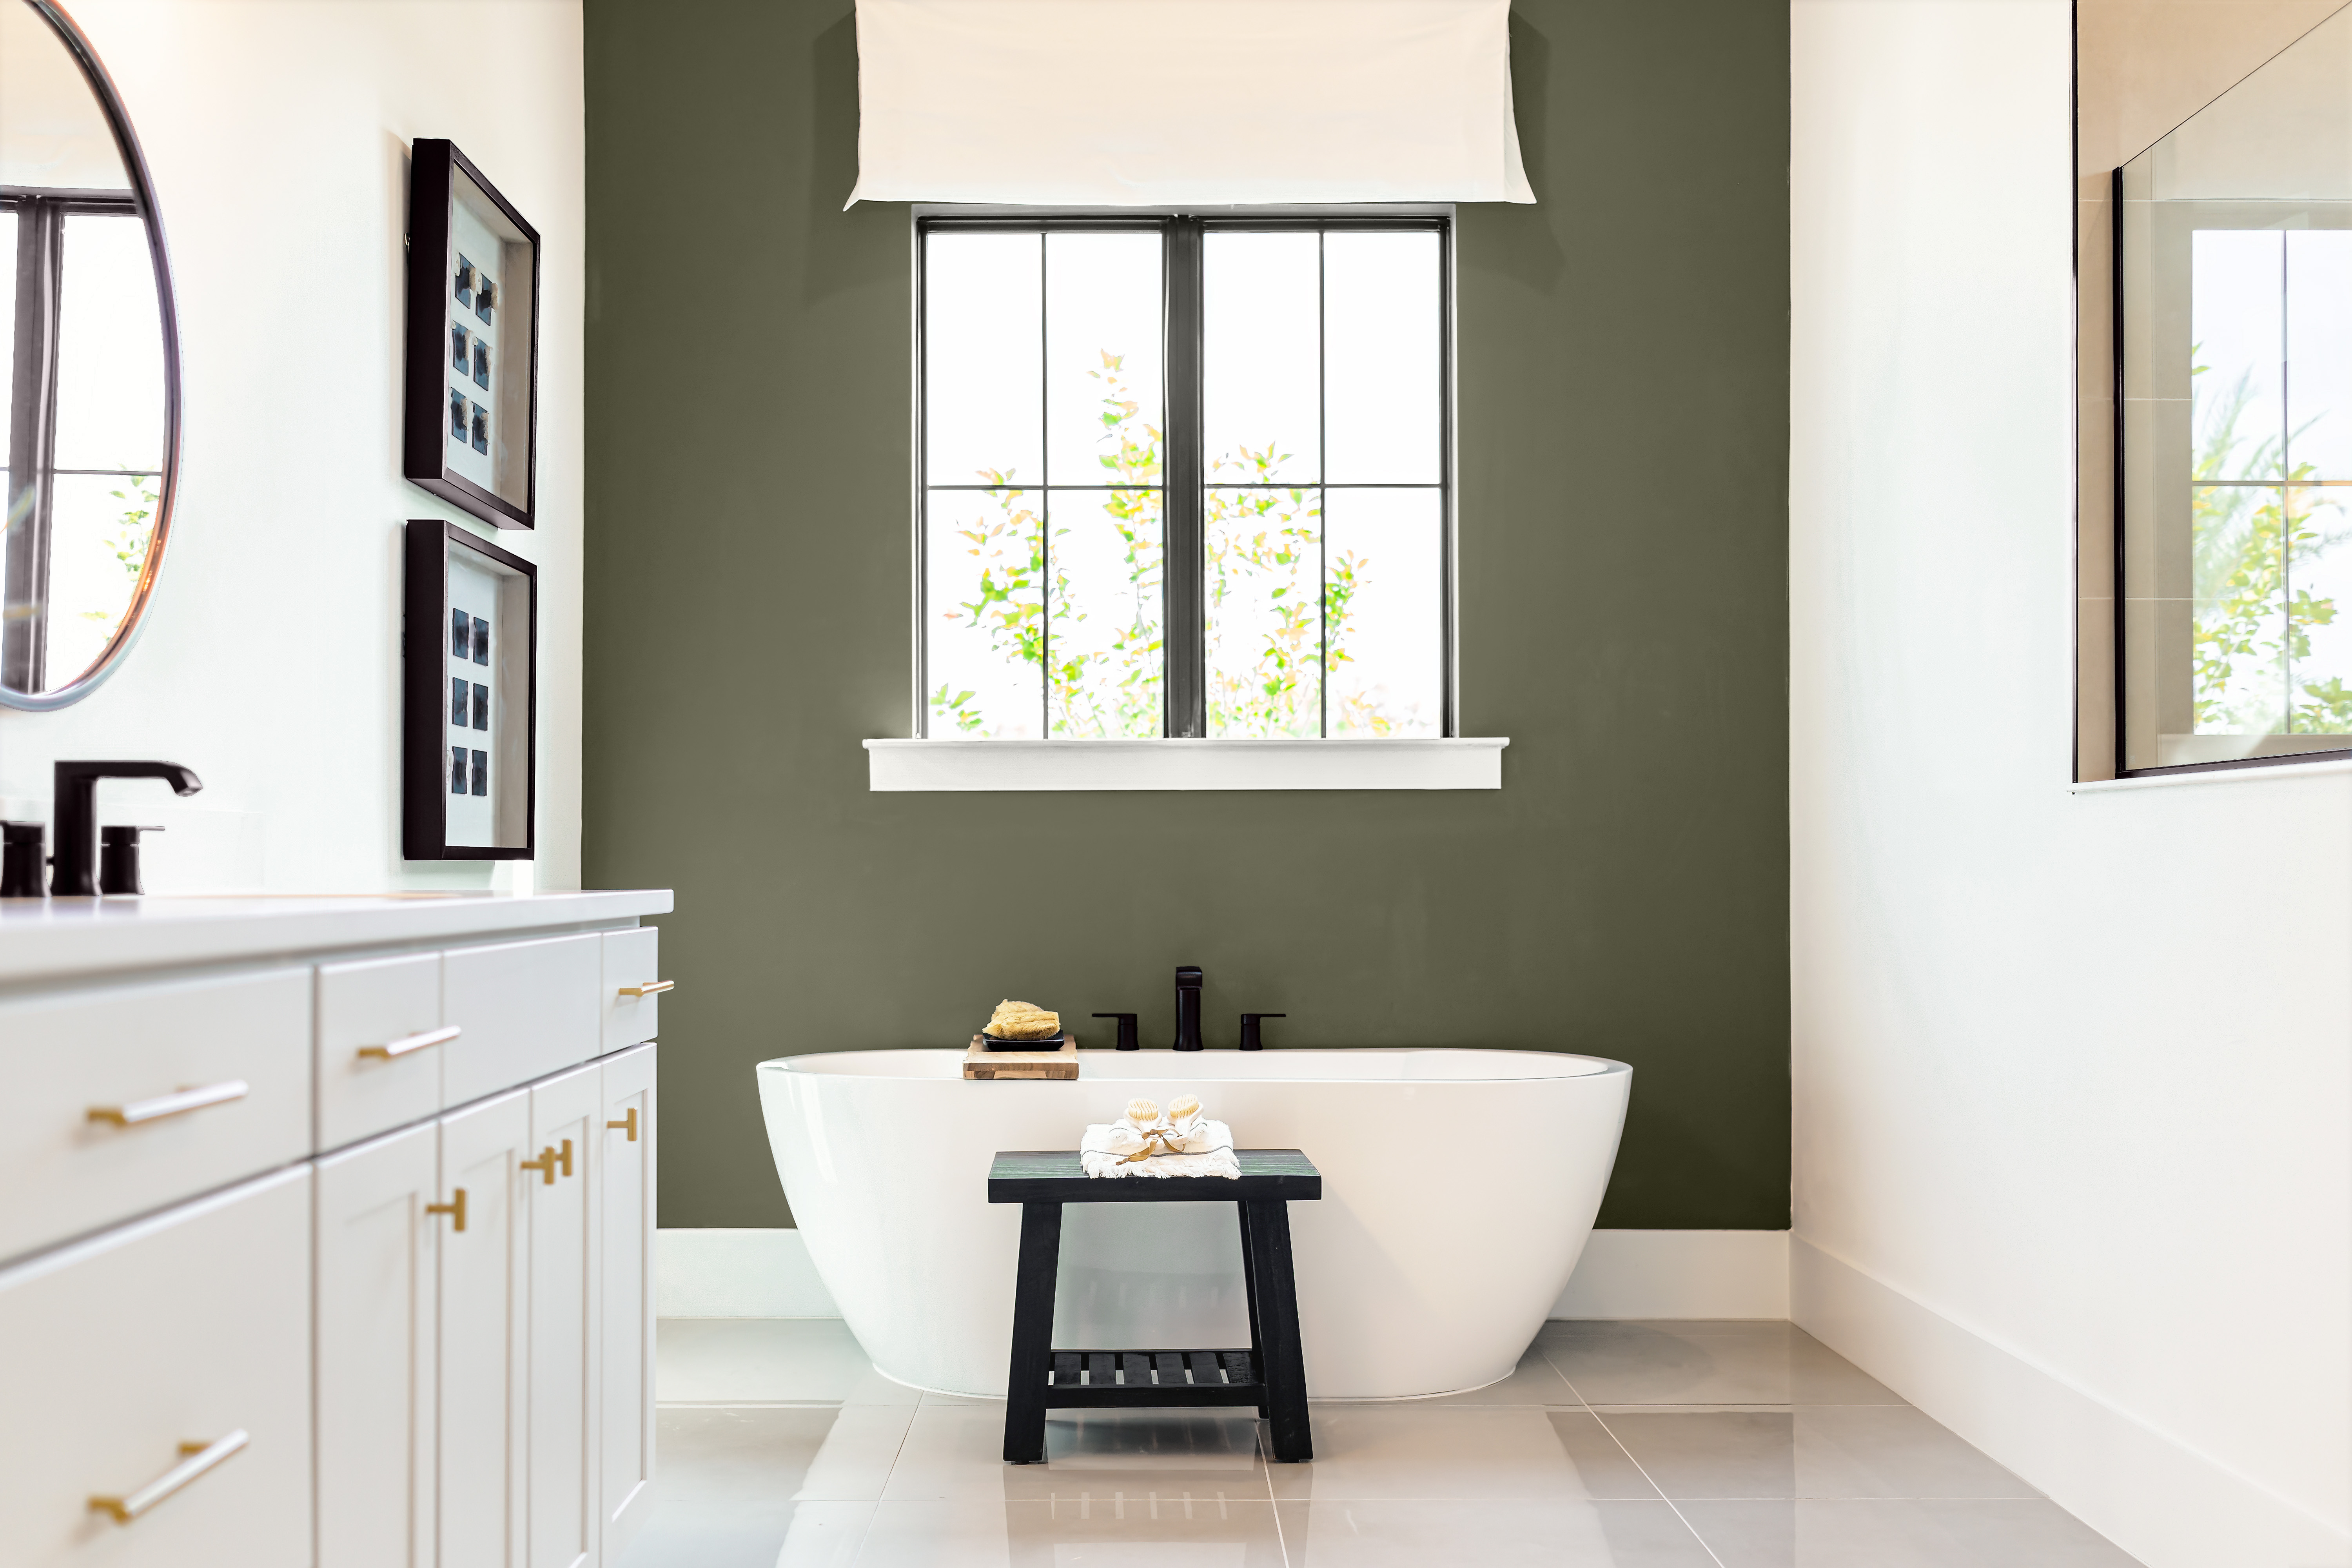 Une grande salle de bain avec deux murs peints en blanc et un mur d'accent peint en vert olive foncé, avec une baignoire blanche